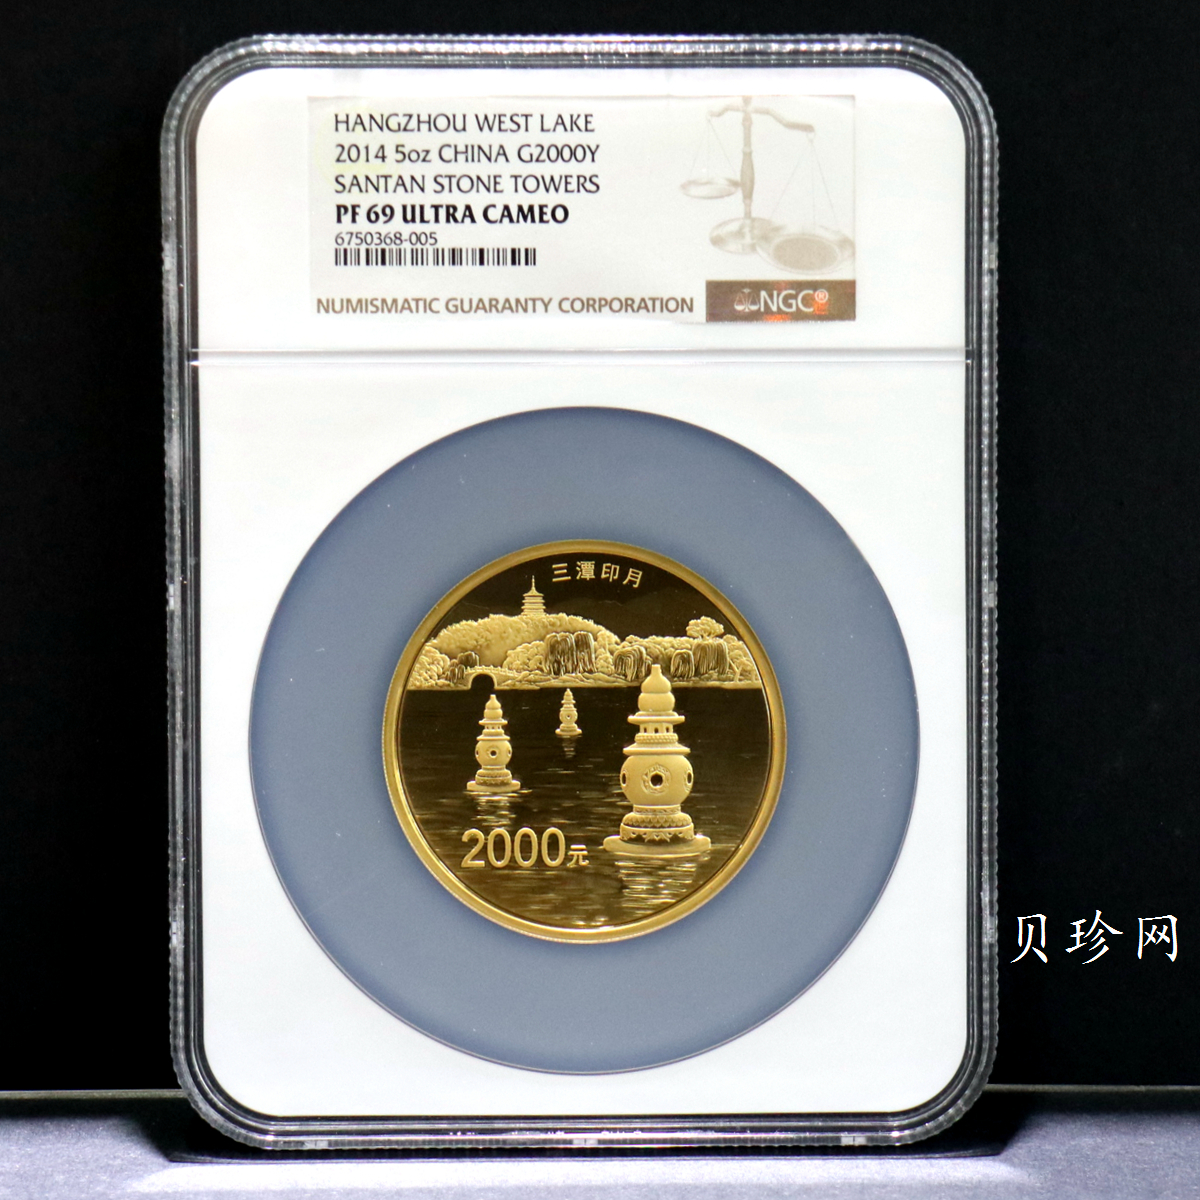 【140702】2014年世界遗产-杭州西湖文化景观-三潭印月5盎司精制金币